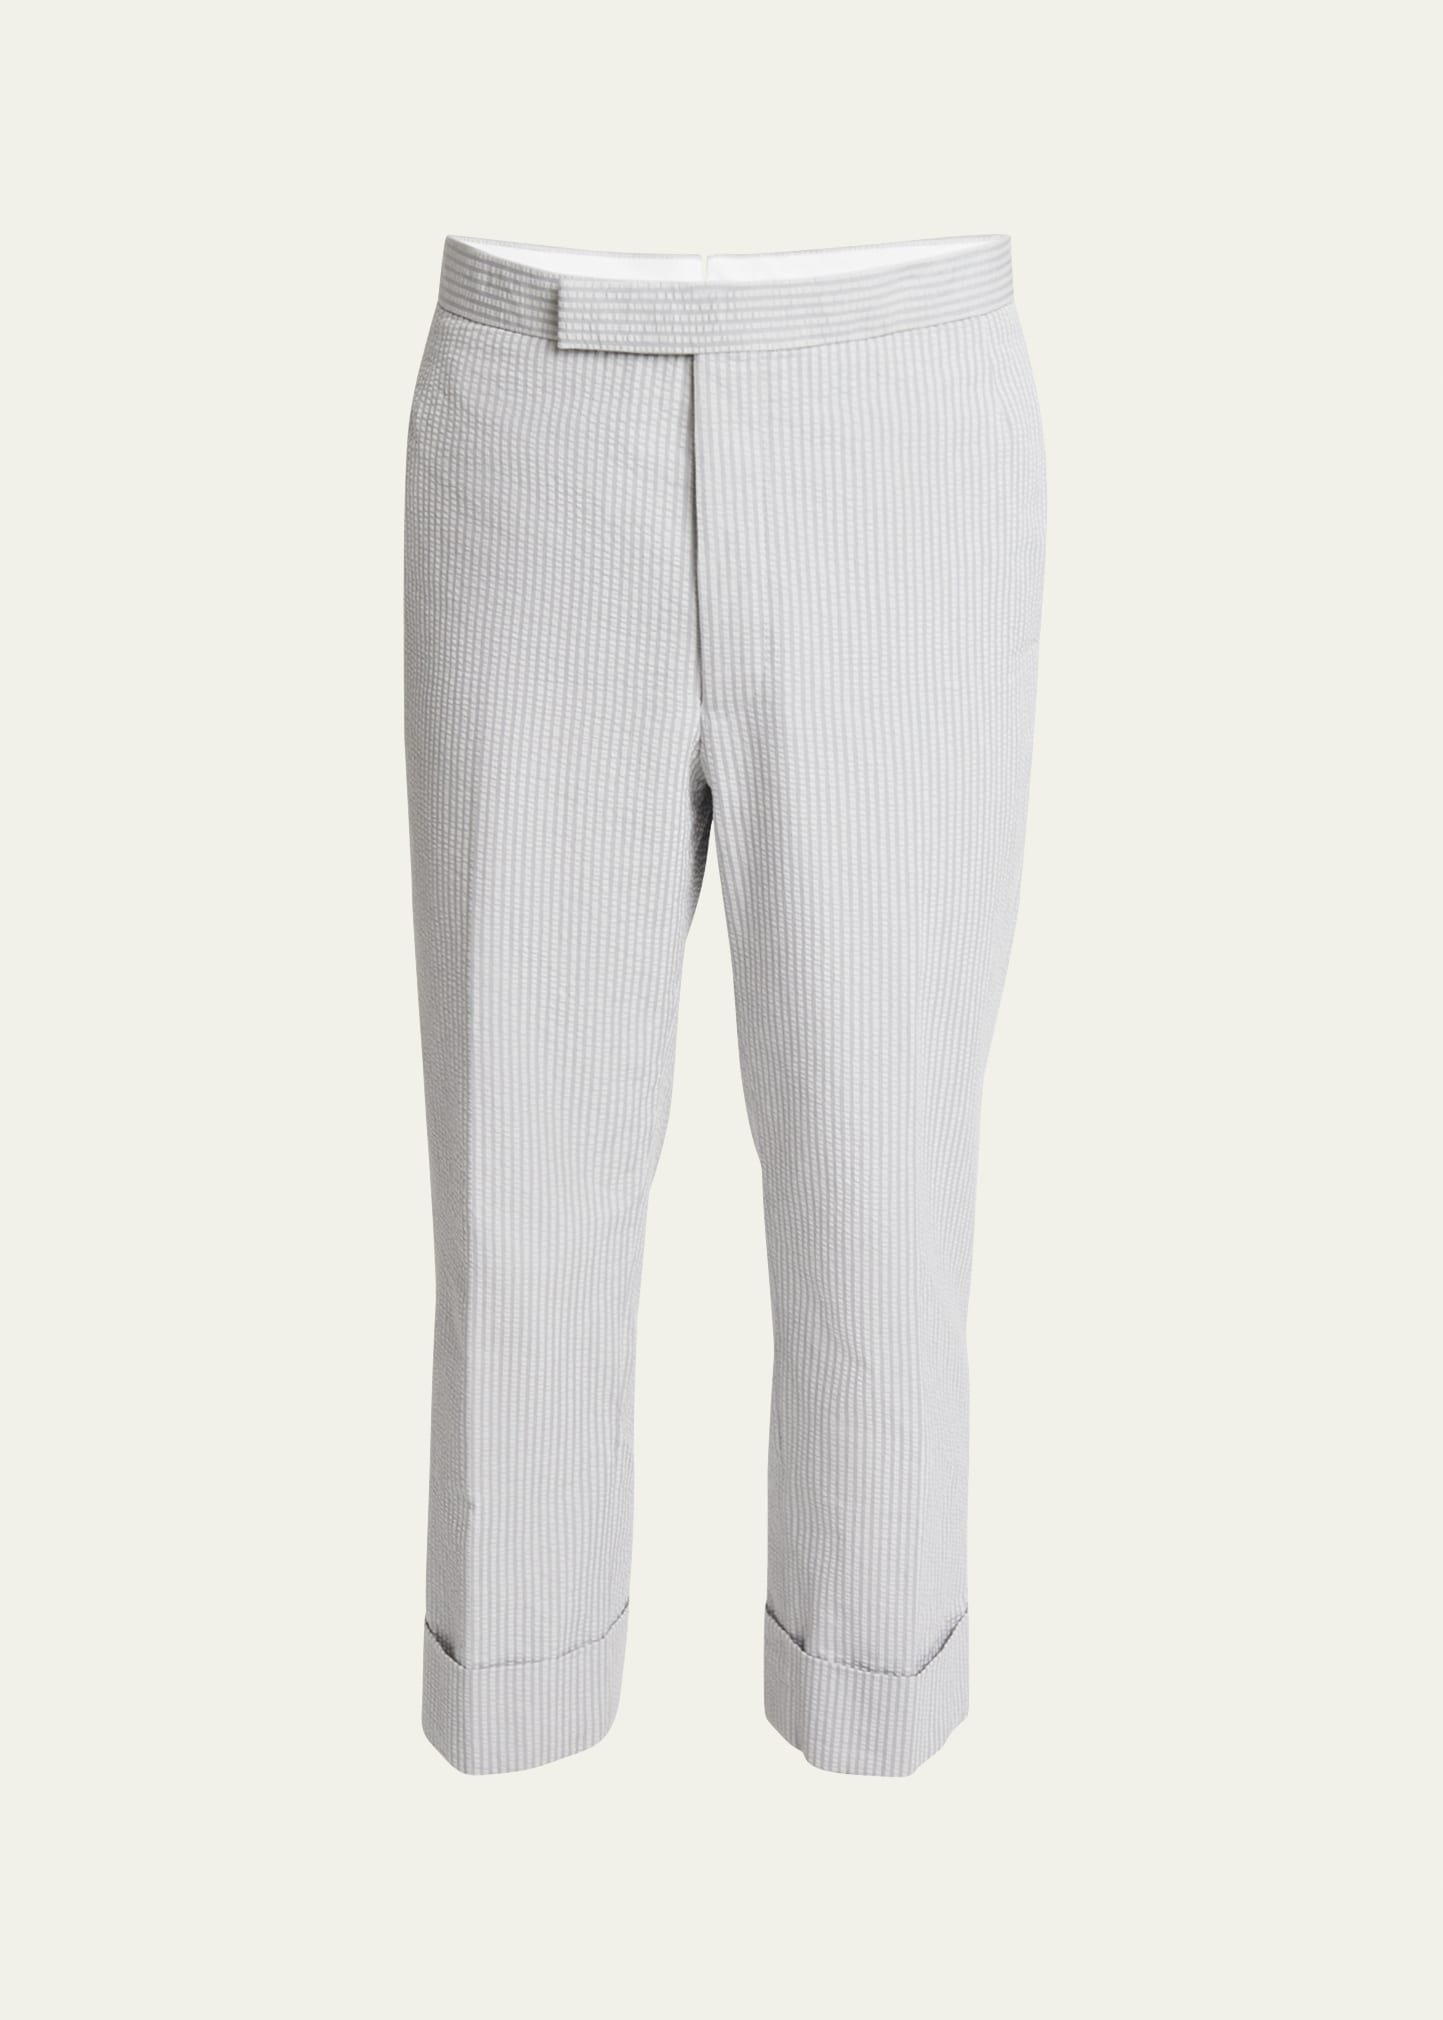 Men's Cotton Seersucker Backstrap Pants